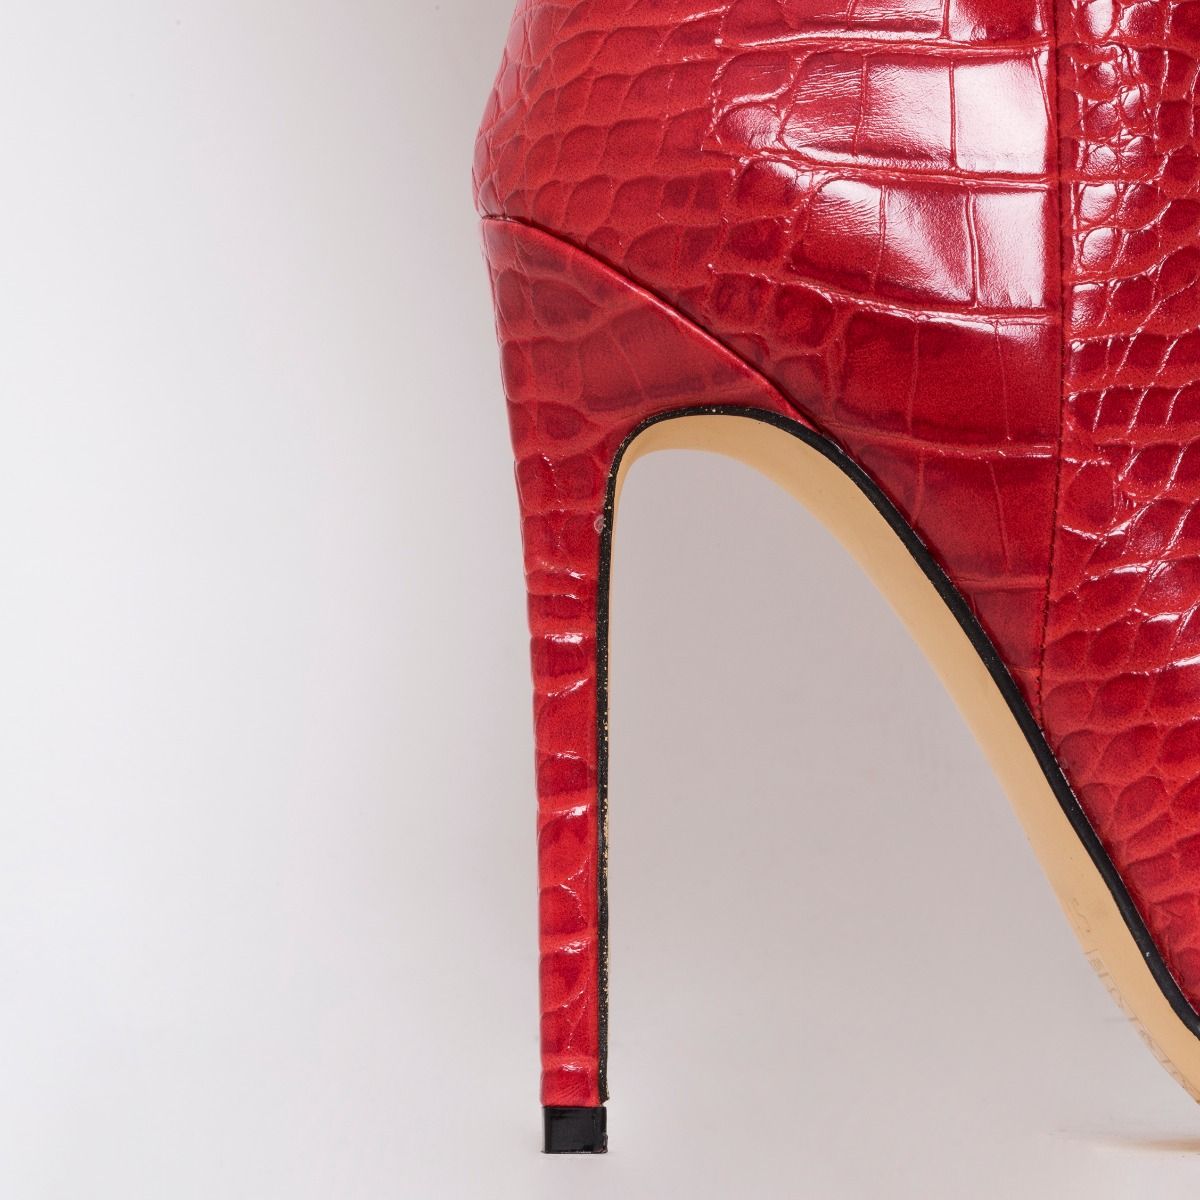 red croc heels